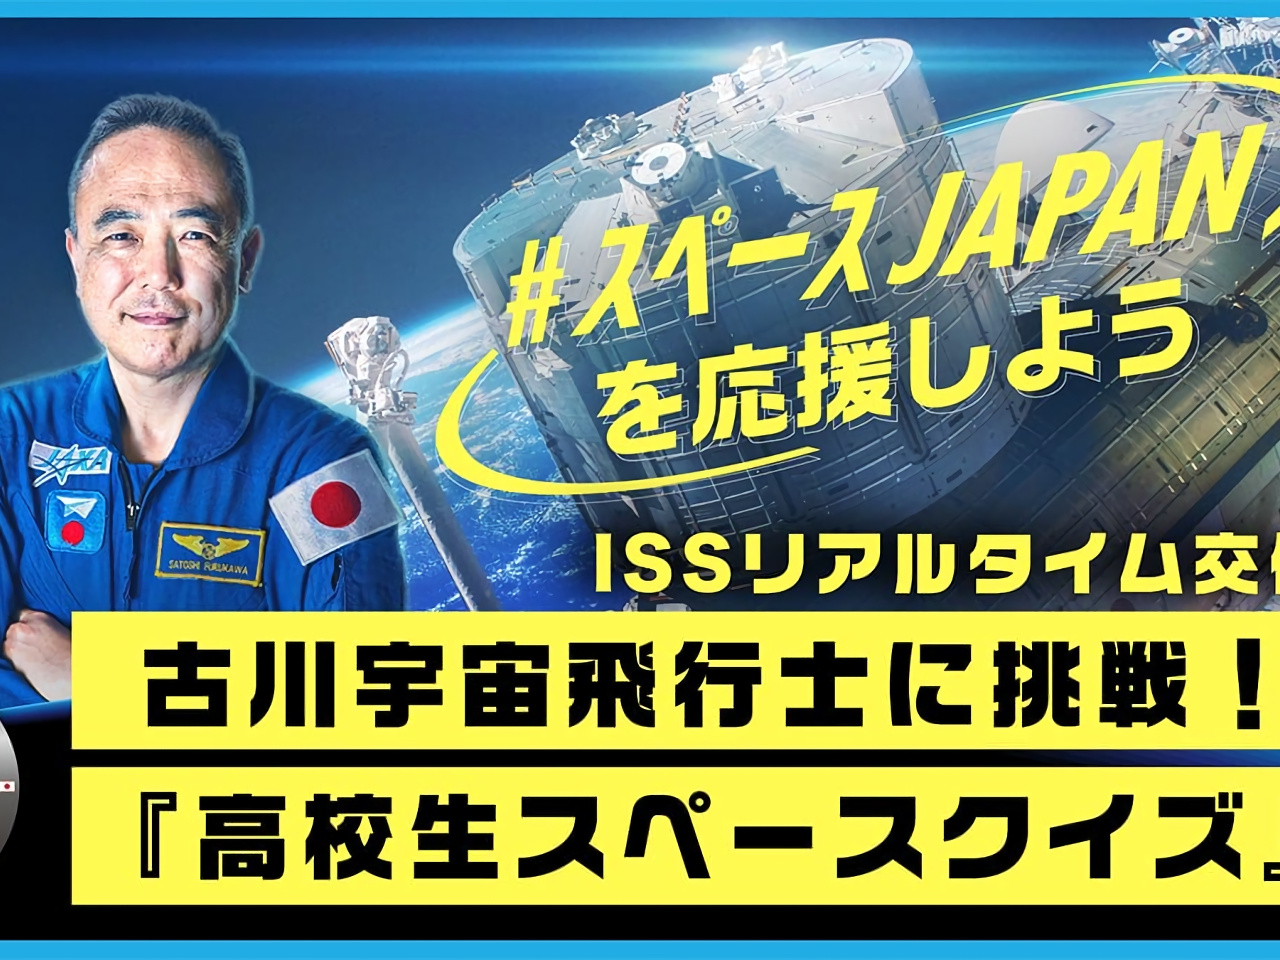 ISSからクイズを出題、古川宇宙飛行士がリアルタイムで解説--高校生を募集